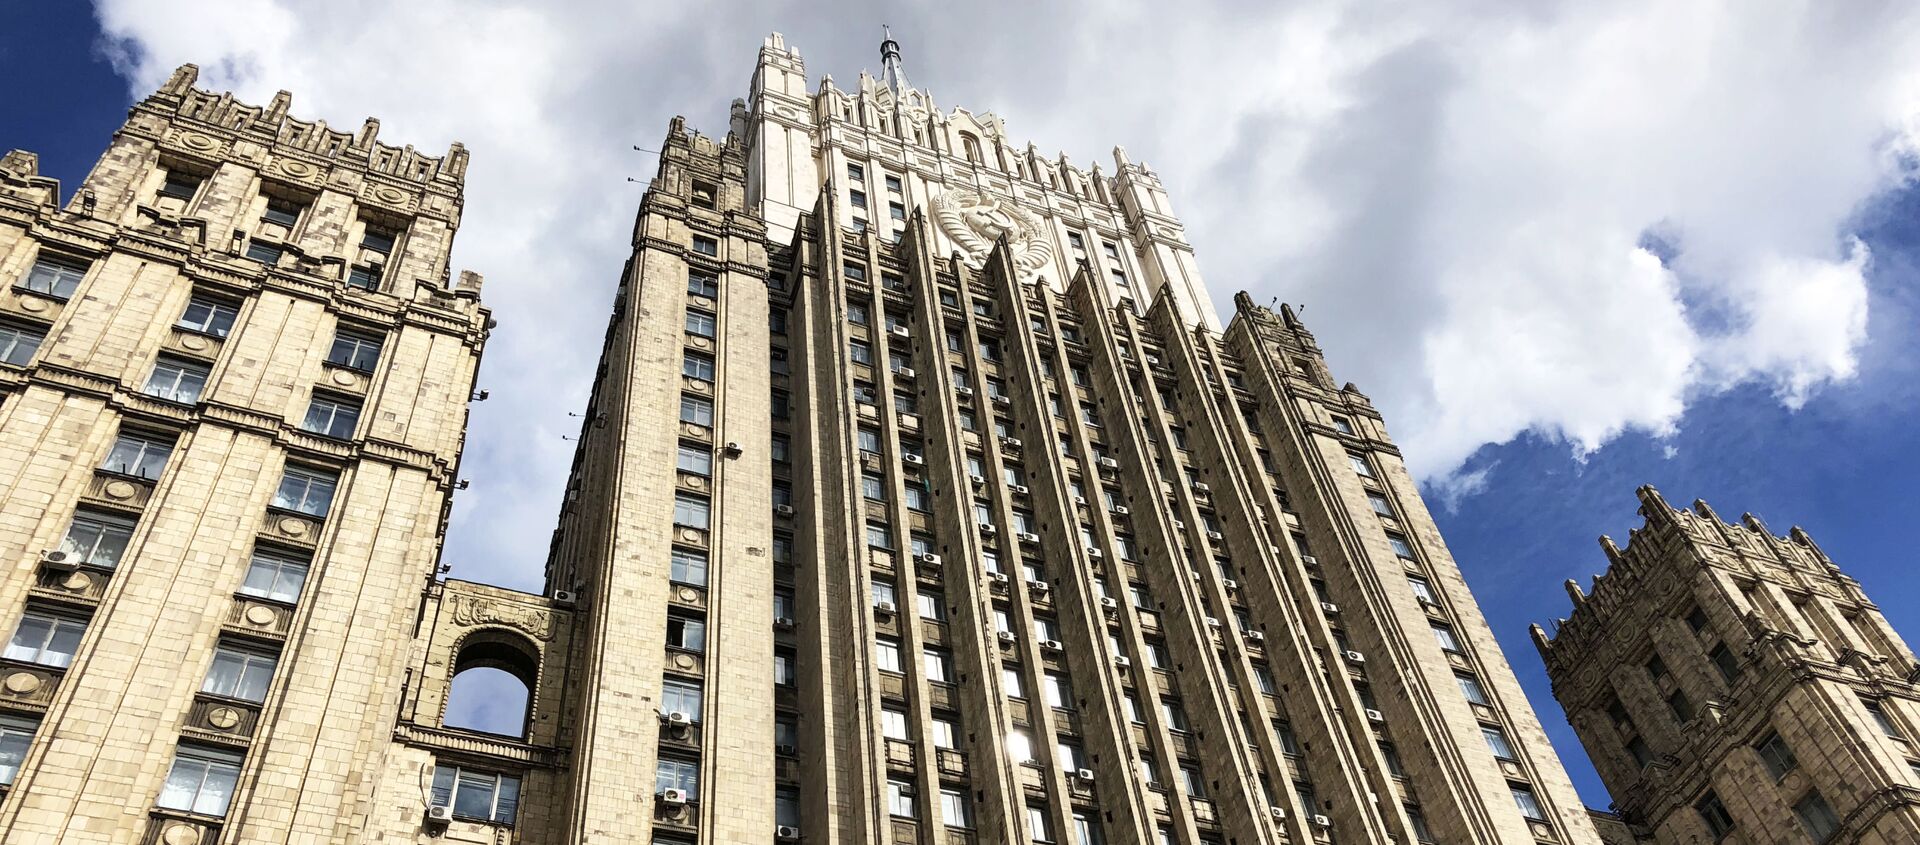 Здание министерства иностранных дел РФ  - Sputnik Грузия, 1920, 03.02.2021